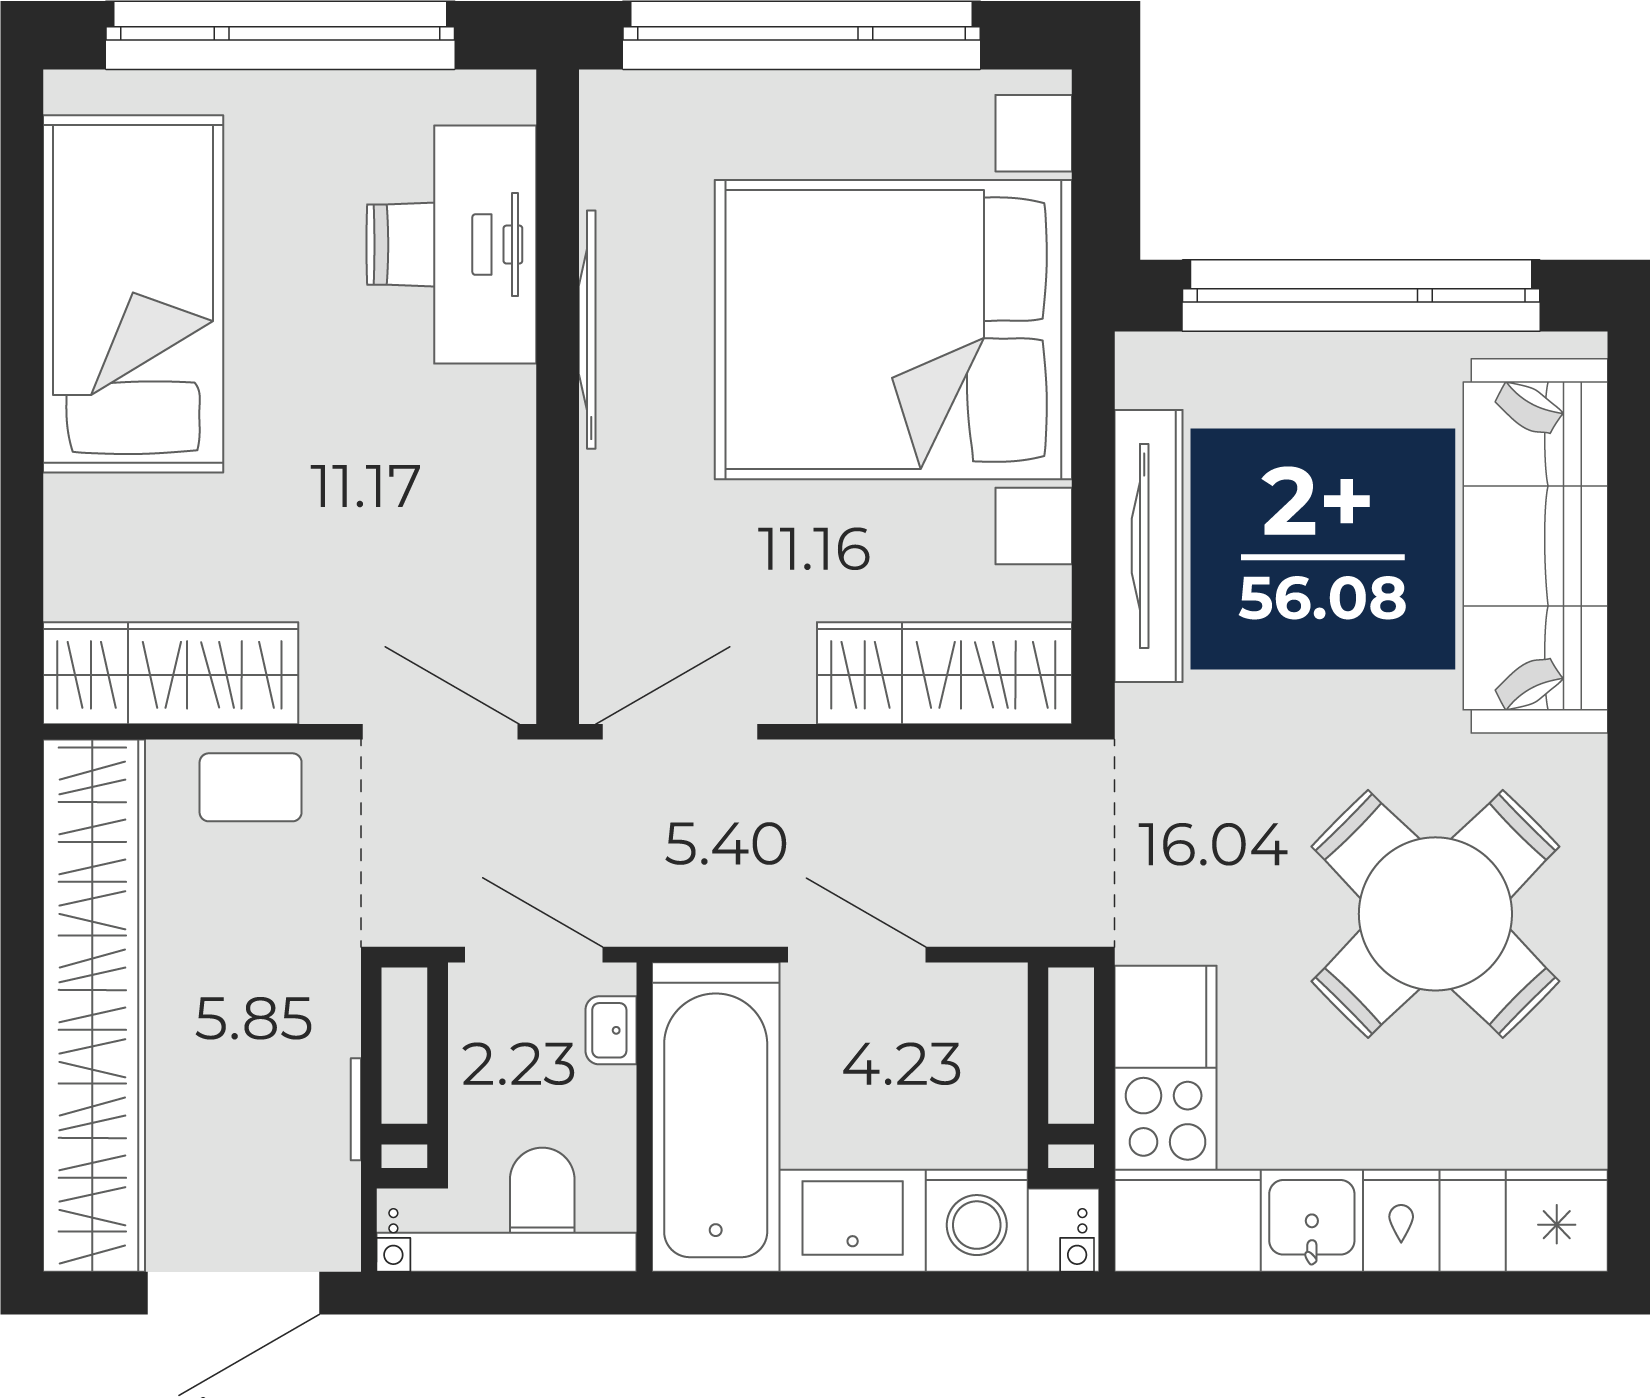 Квартира № 204, 2-комнатная, 56.08 кв. м, 10 этаж